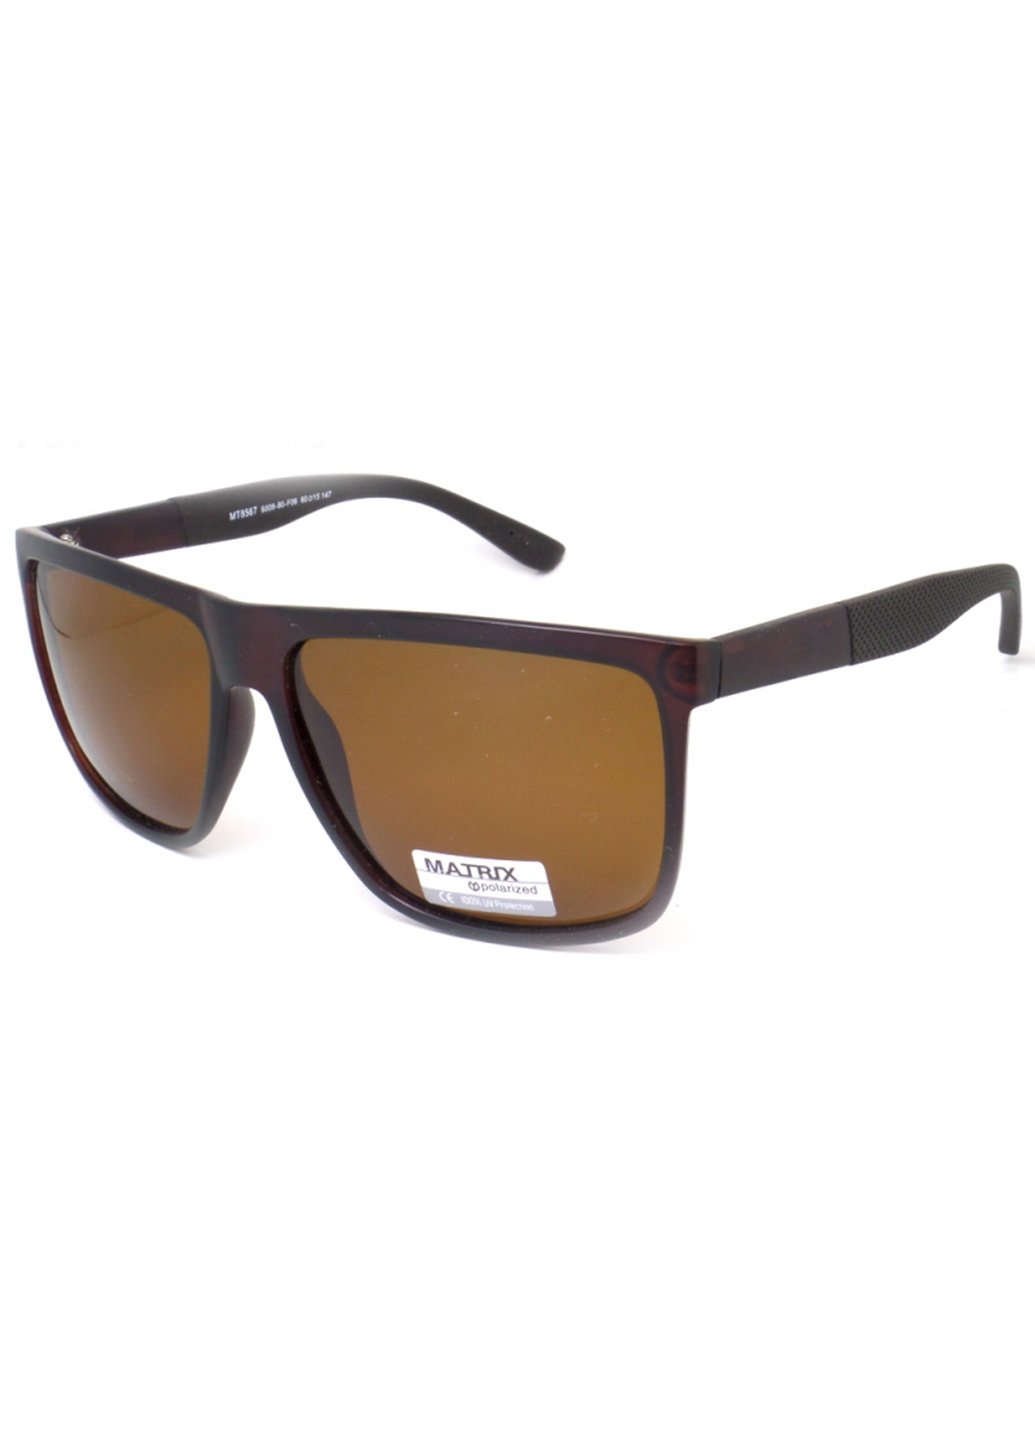 Купить Коричневые мужские солнцезащитные очки Matrix с поляризацией MT8567 111008 в интернет-магазине